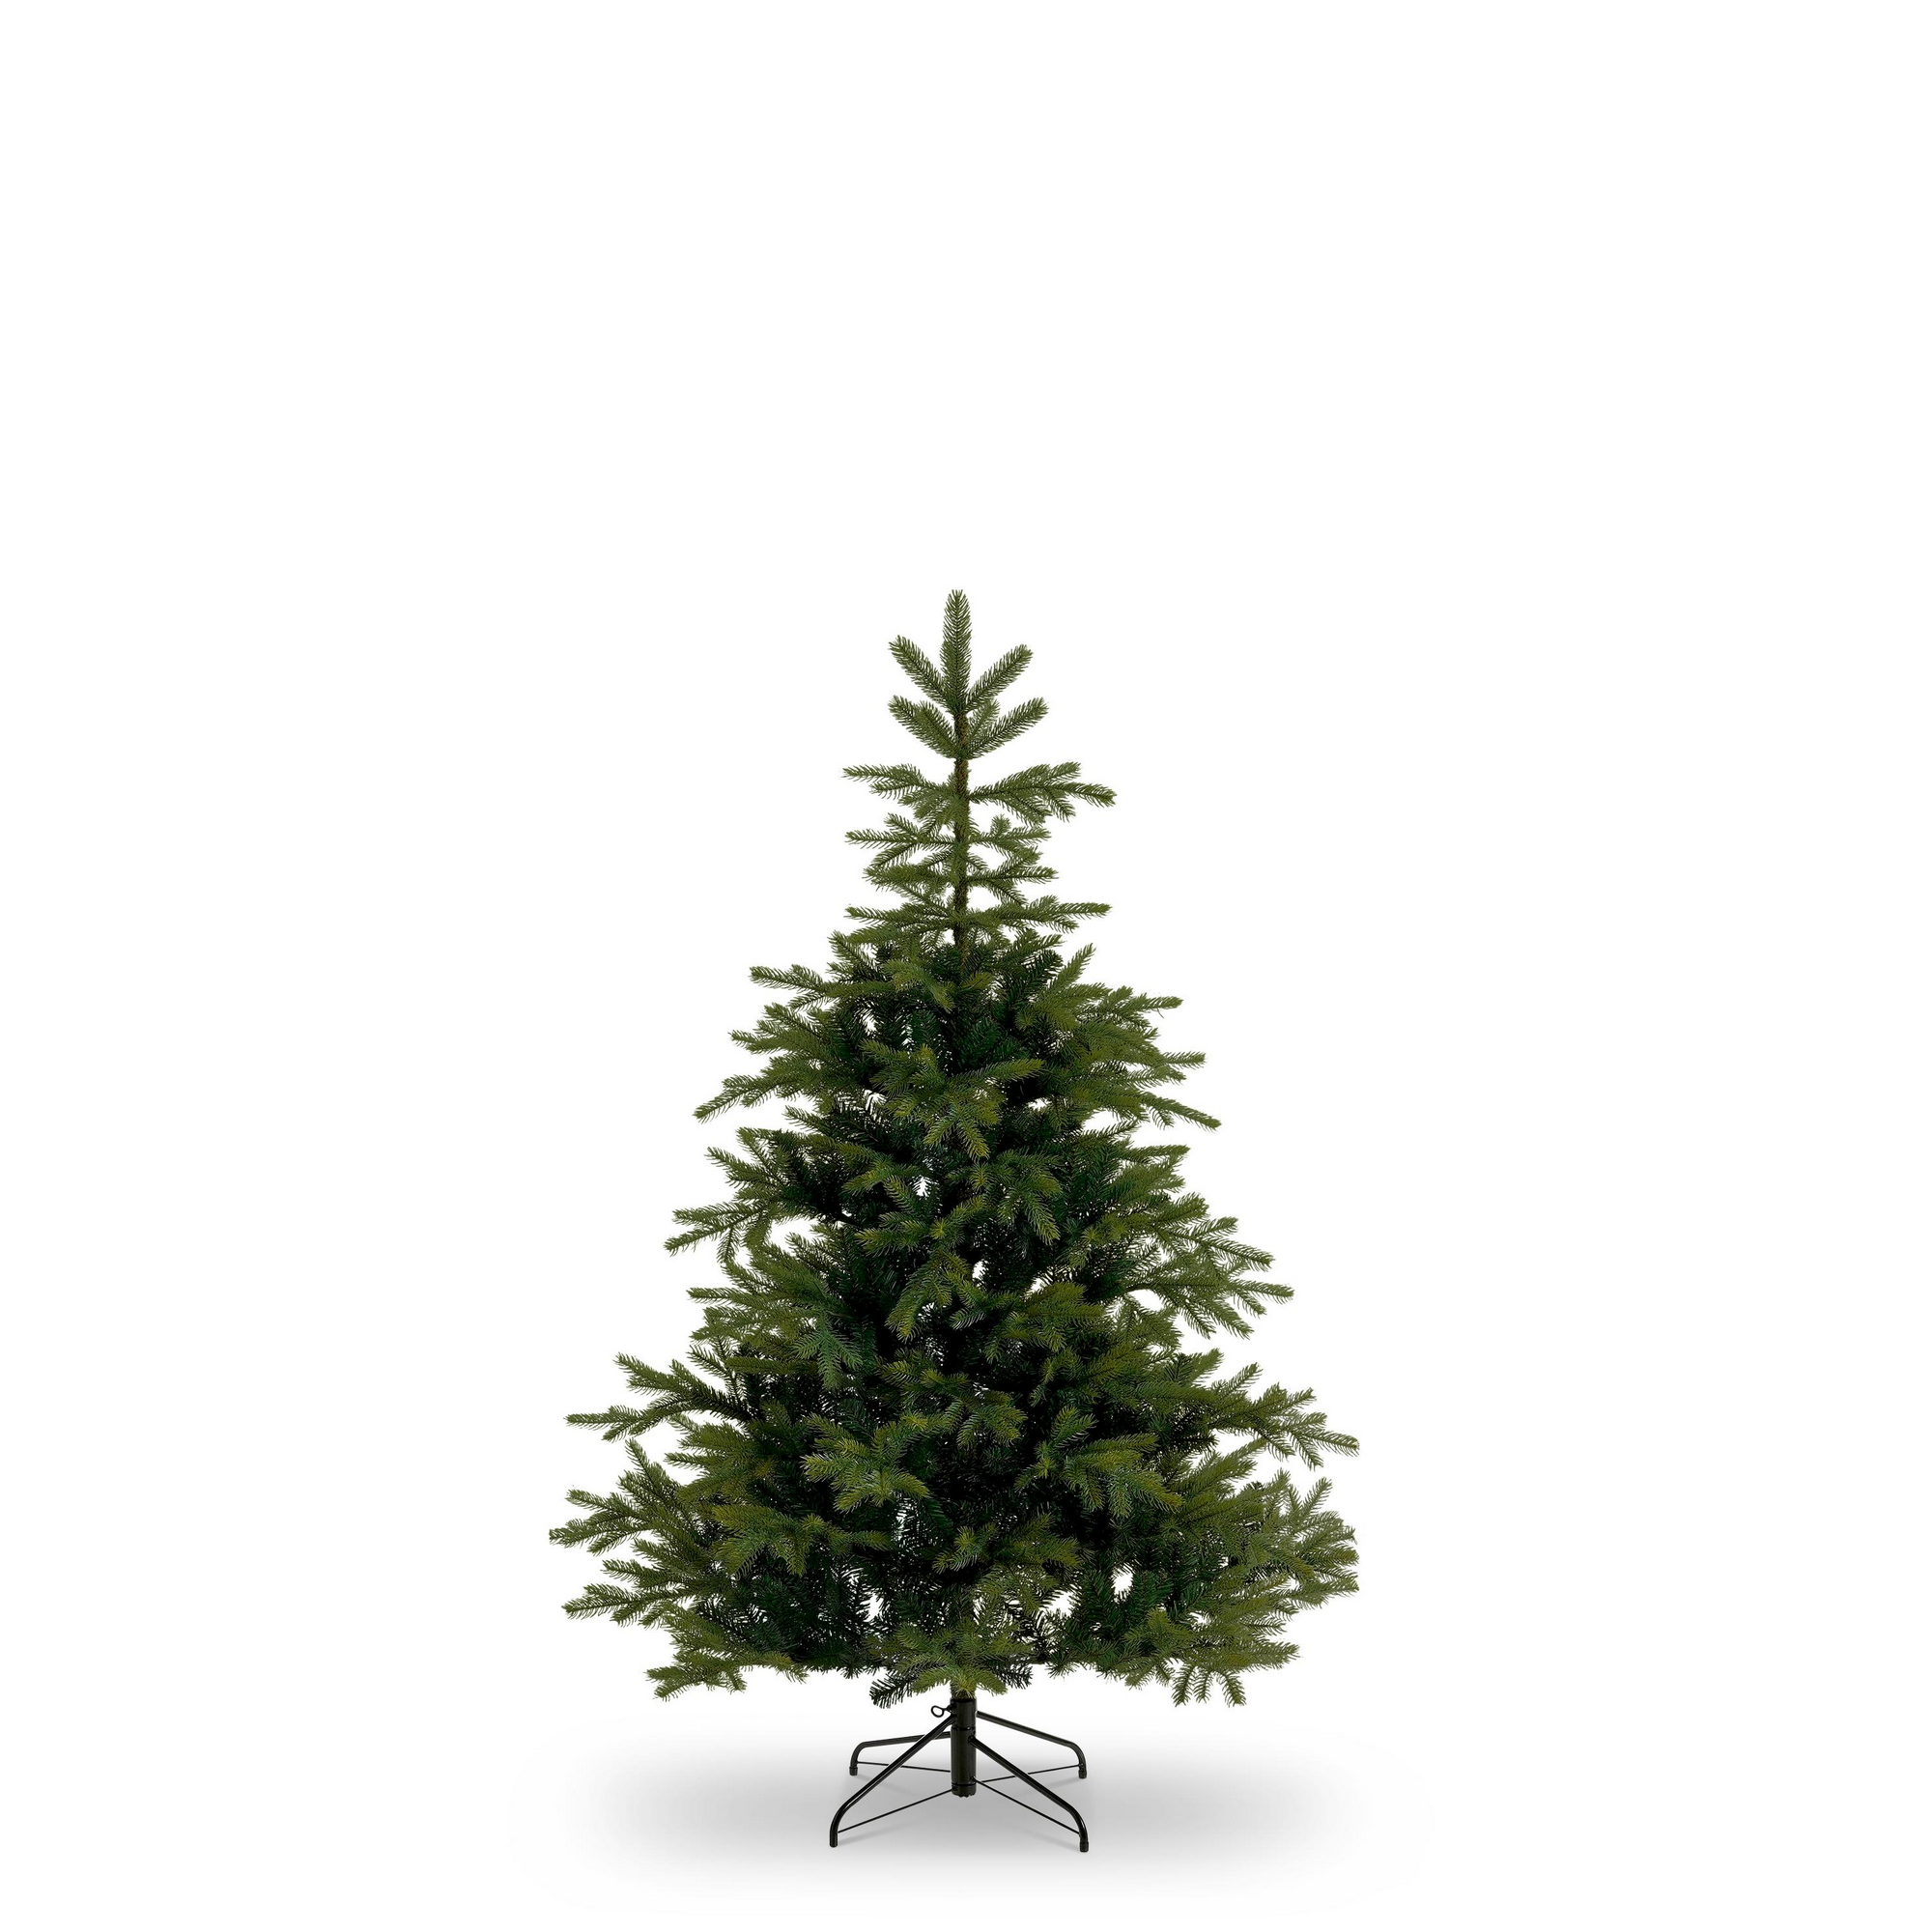 Künstlicher Weihnachtsbaum 'Fernie' grün inklusive Ständer 155 cm + product picture